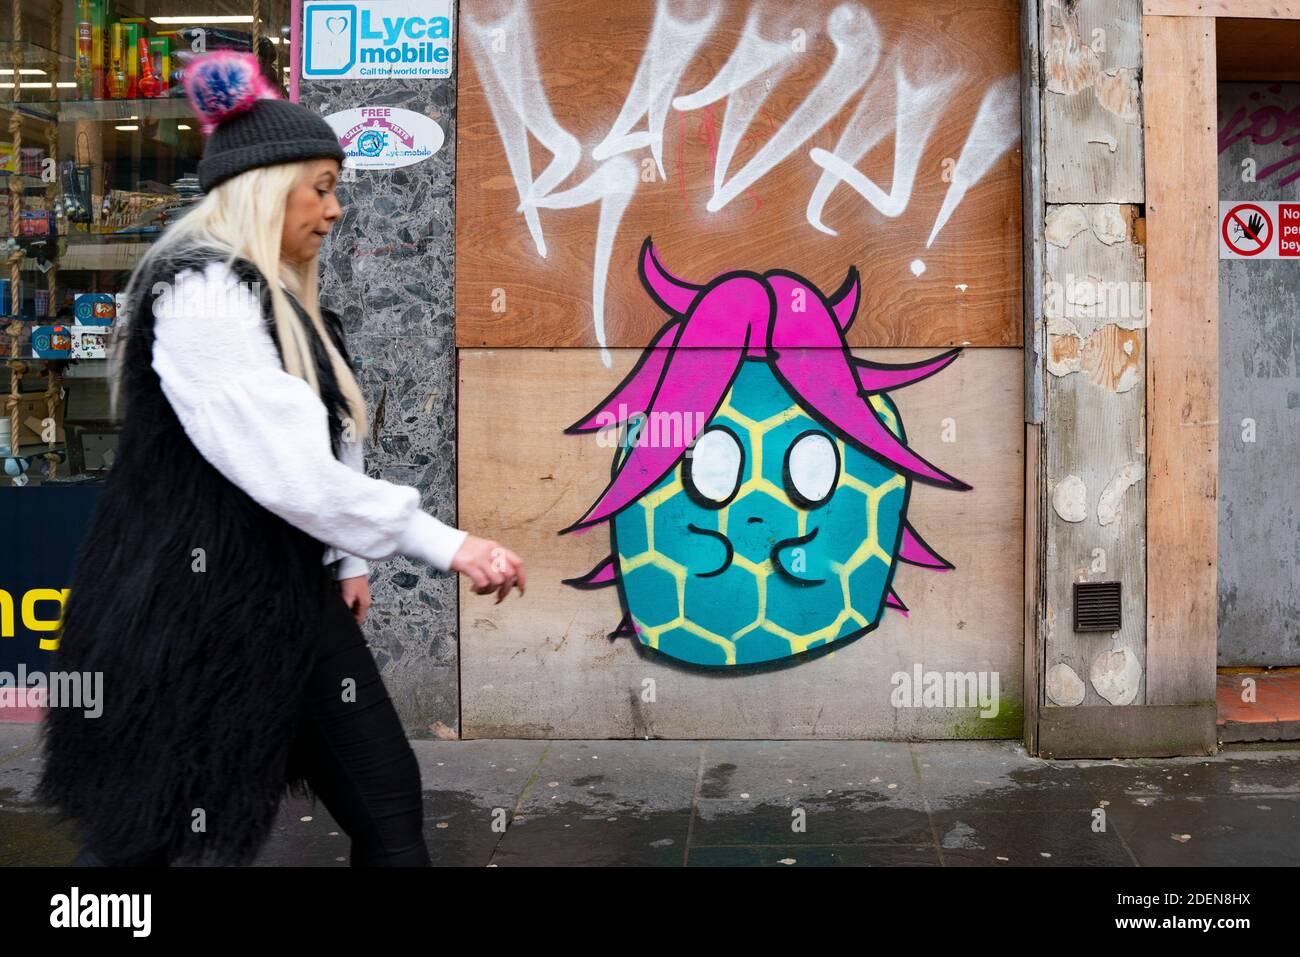 Glasgow, Schottland, UK.1. Dezember 2020. Coronavirus-Gesundheitswarnungen, Ladendisplay und Graffiti im Stadtzentrum von Glasgow. Im Bild: Coronavirus-Graffiti auf einer Glasgow Street. Iain Masterton/Alamy Live News Stockfoto